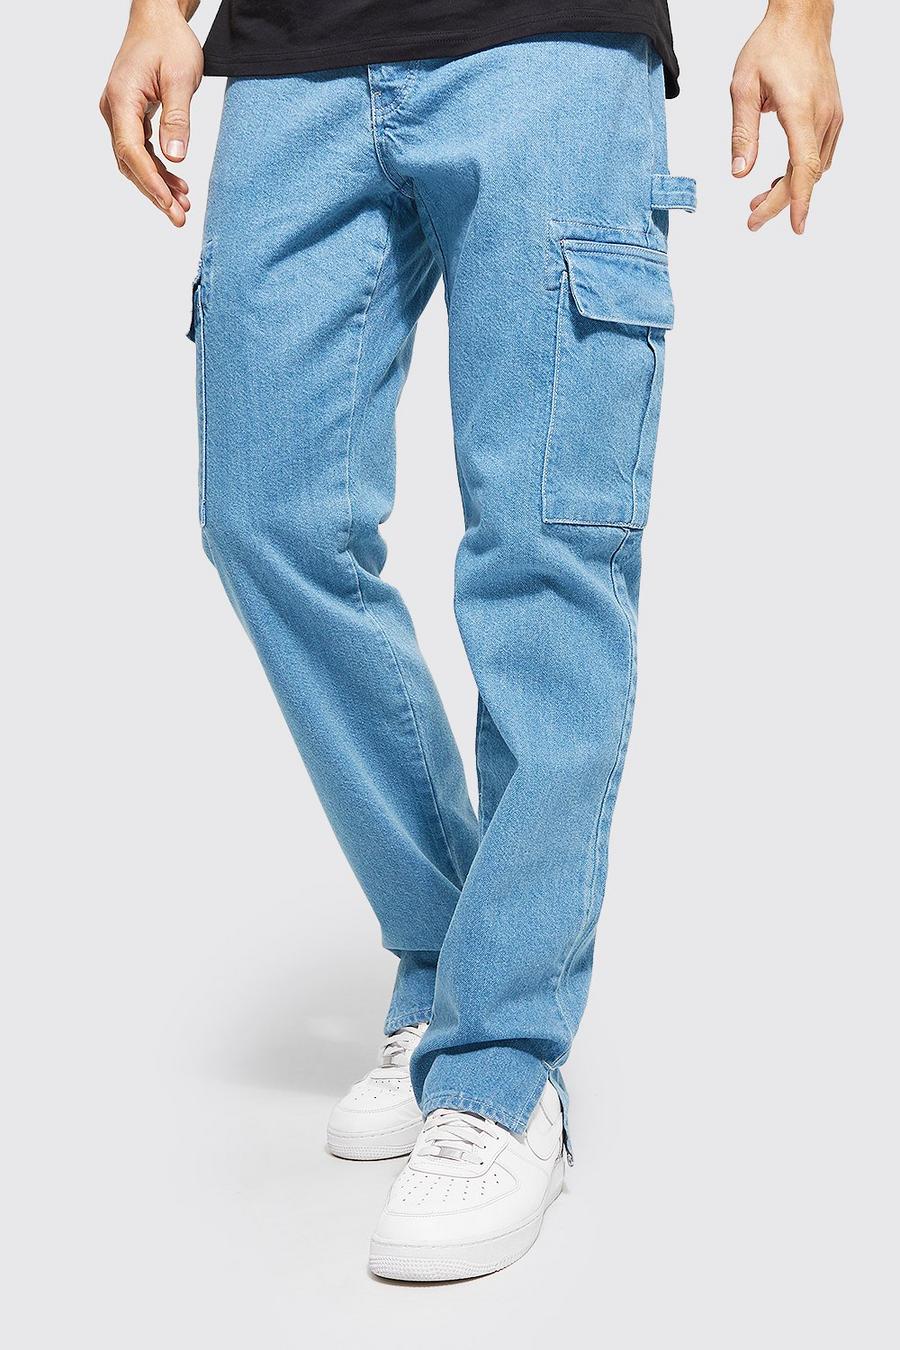 כחול עתיק ג'ינס קרגו בגזרה ישרה עם רוכסן בצד ומכפלת לגברים גבוהים